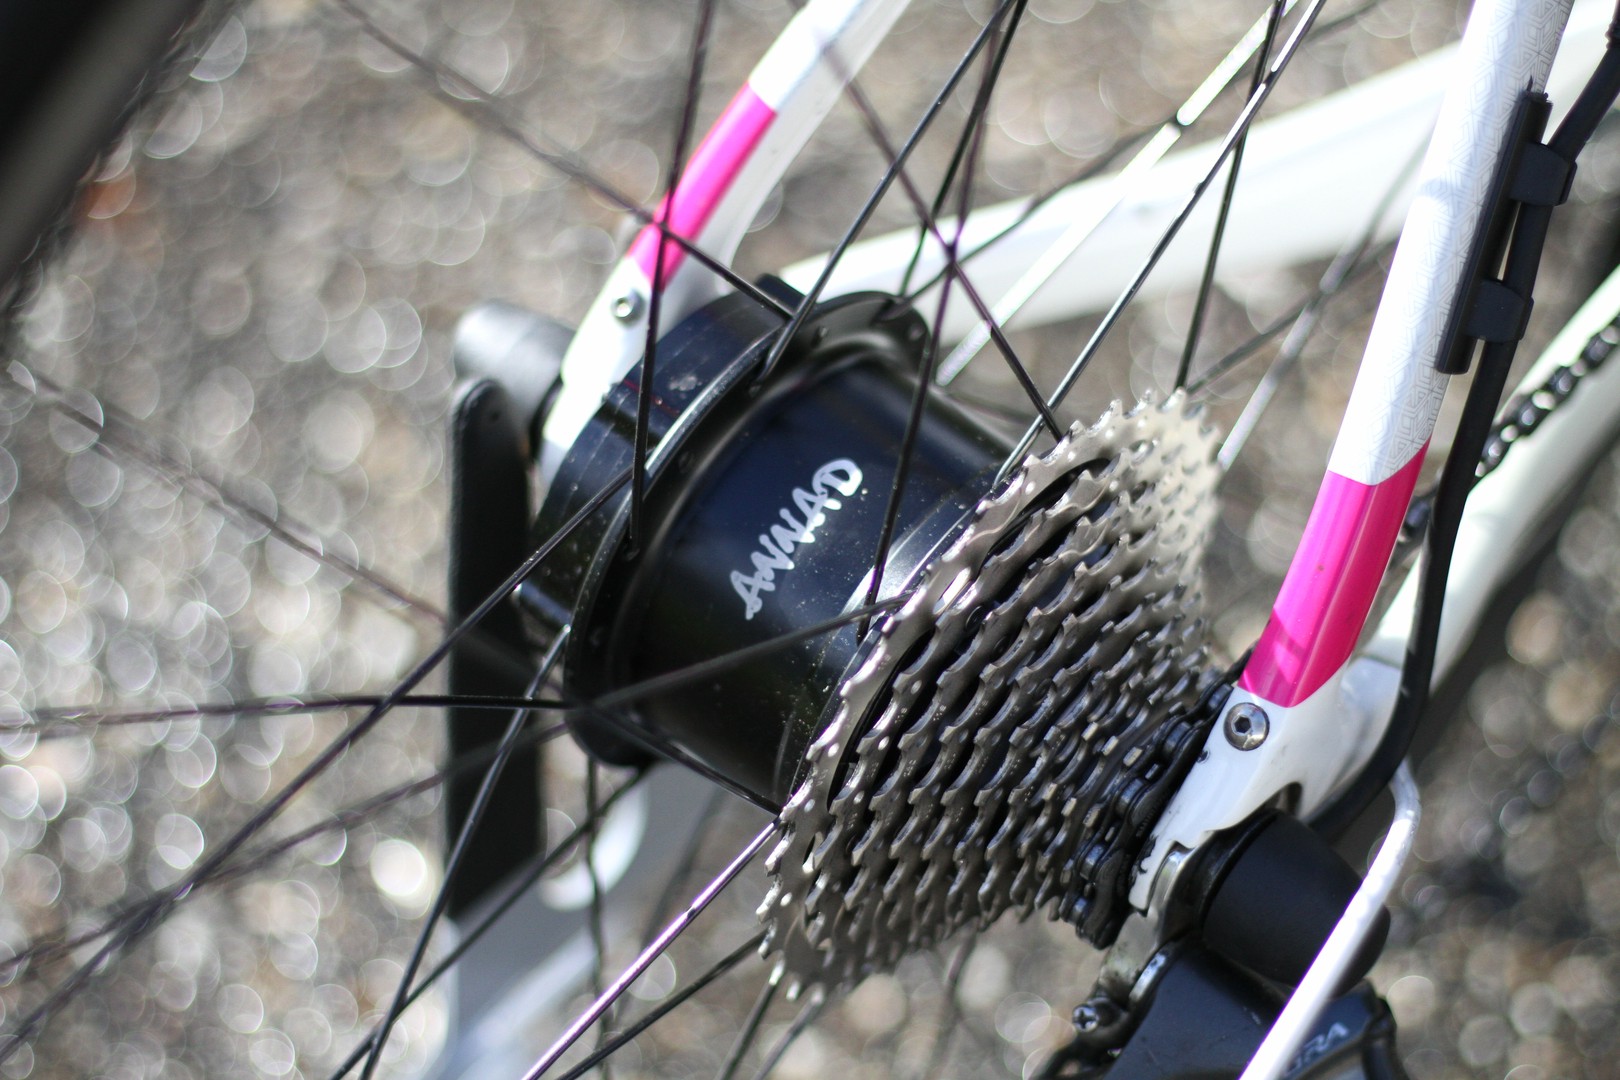 Cable simple pour moteur Bluetooth et batterie – Annad : et votre vélo  devient électrique